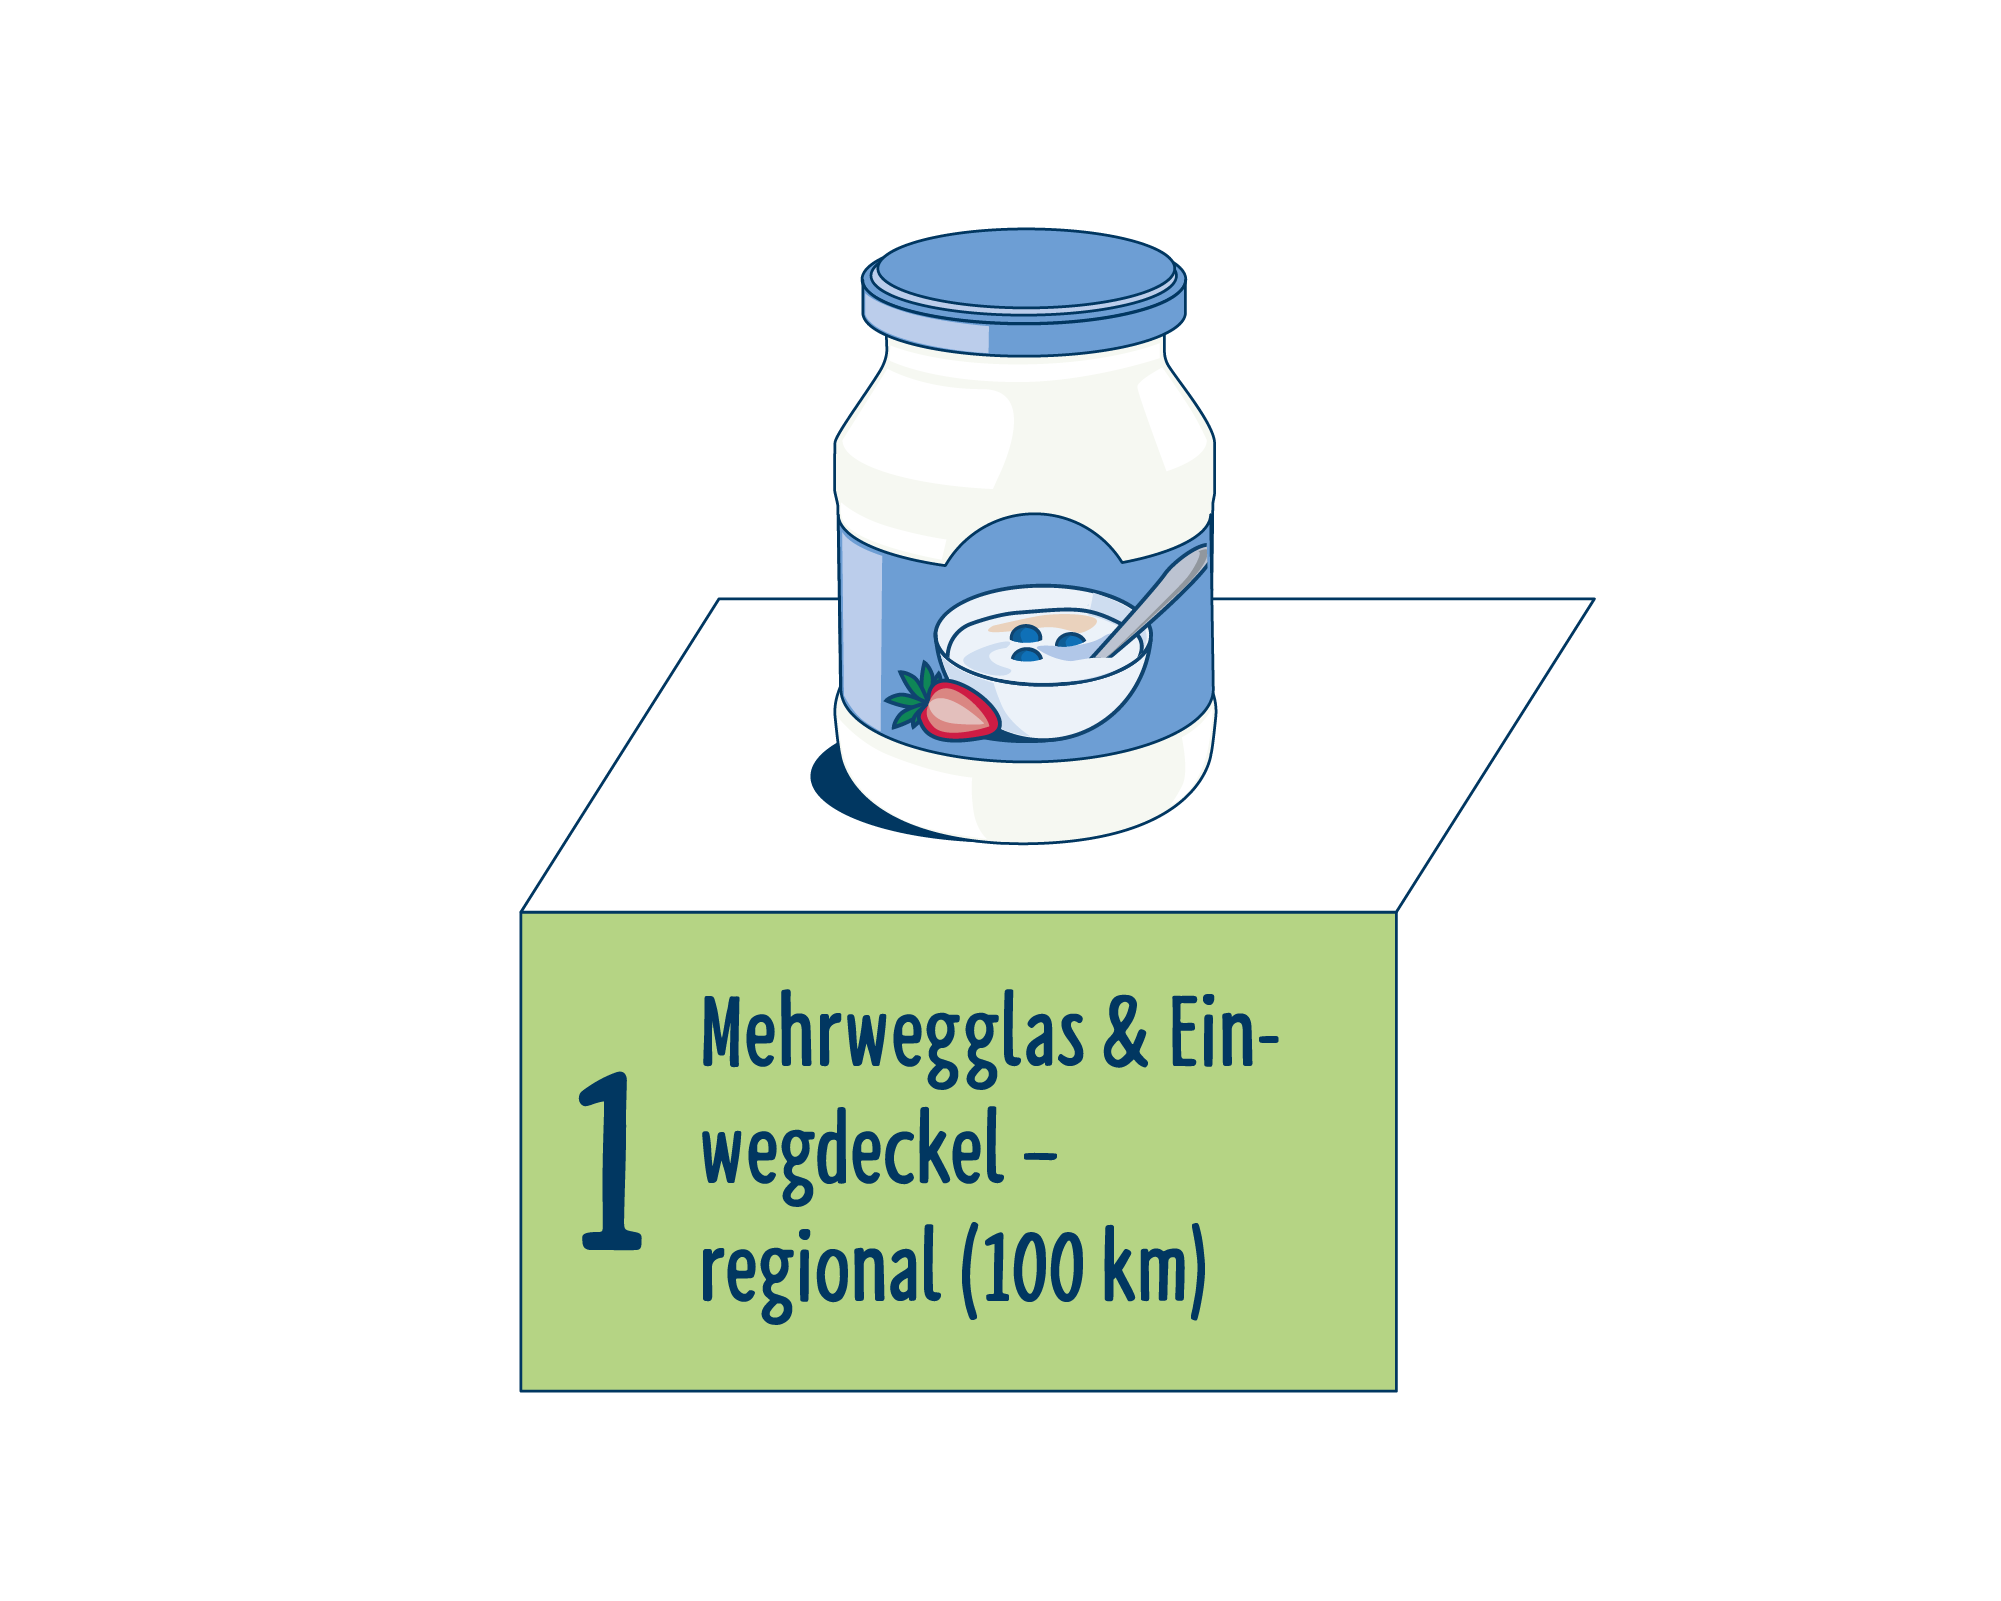 Bild Produktverpackung von Joghurt & Desserts eingeordnet auf Platz 1, bestehend aus Mehrwegglas & Einwegdeckel - regional (100km).